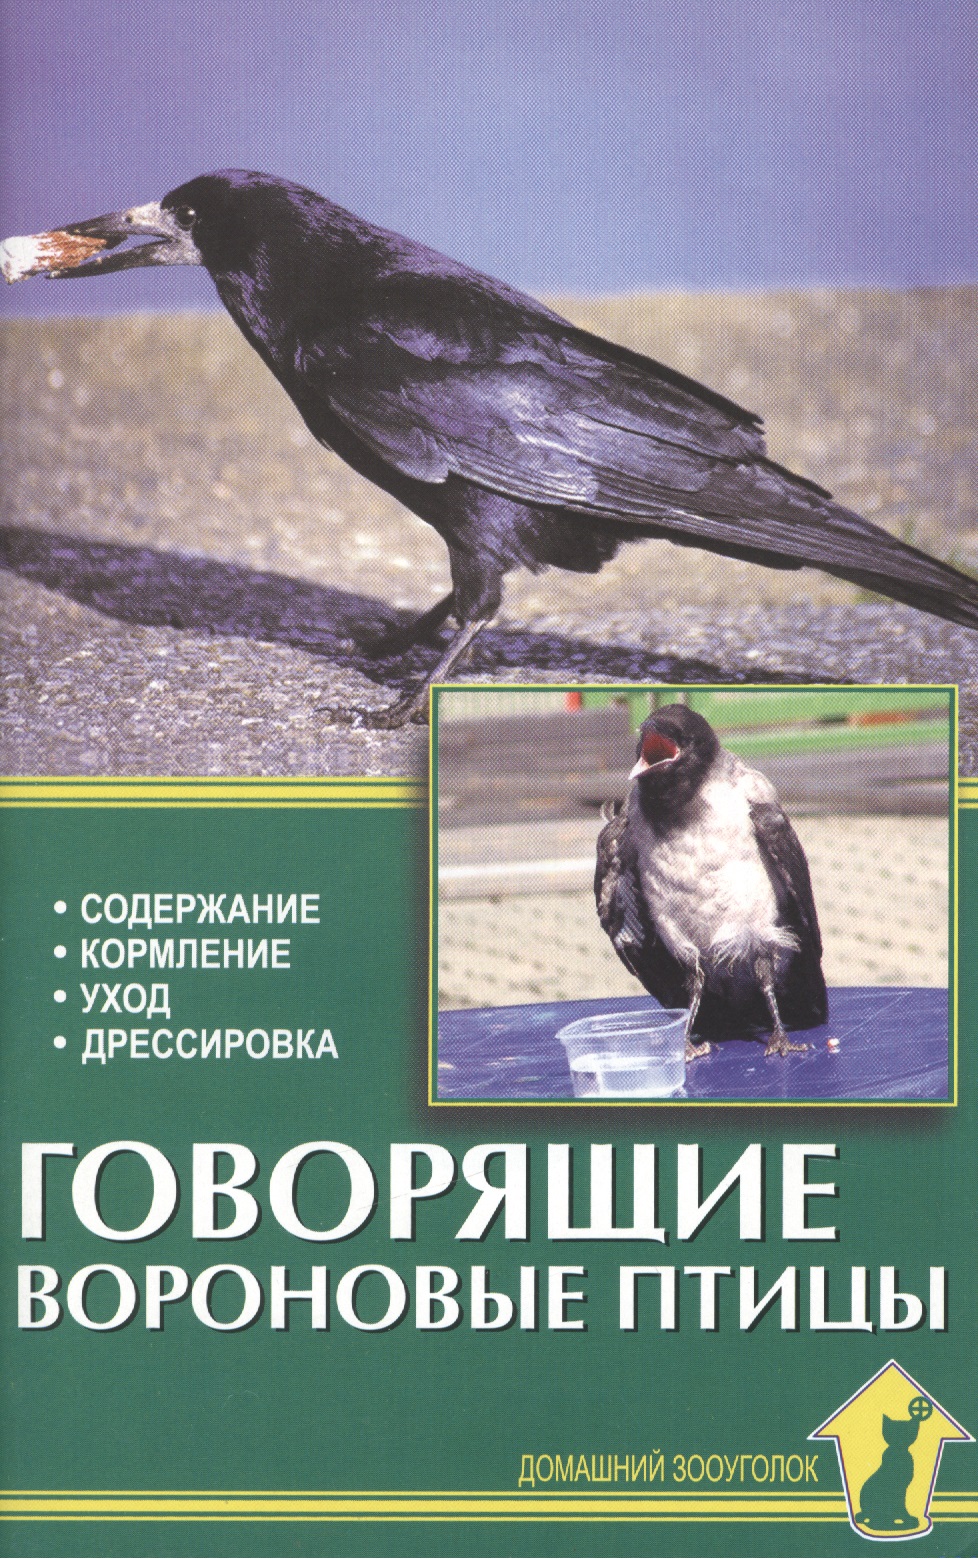 Рахманов Александр Иванович - Говорящие вороновые птицы